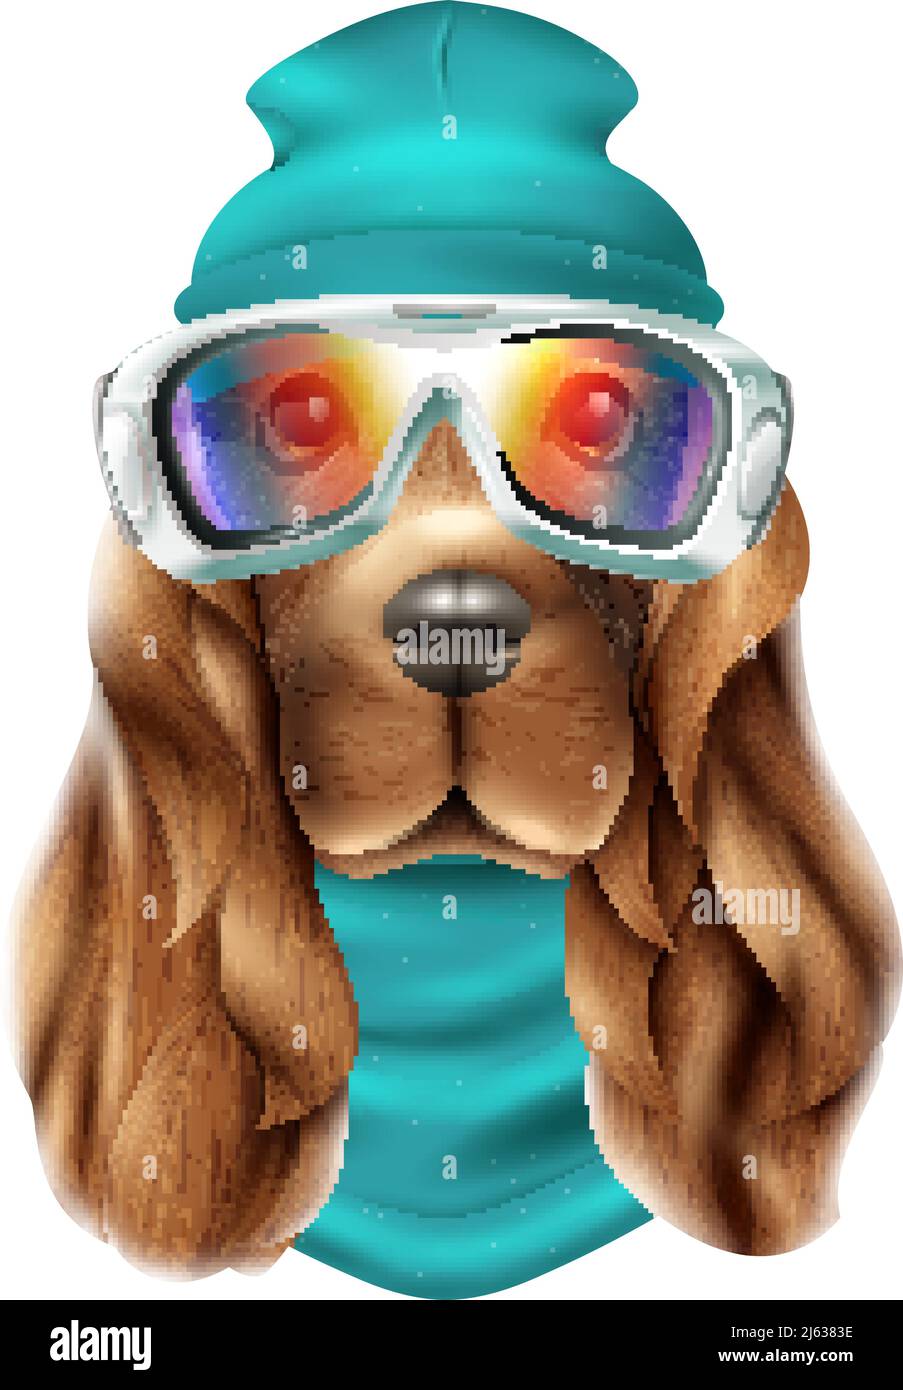 Costume de ski coloré réaliste pour chien de spaniel portrait avec animal mignon et illustration vectorielle de l'équipement de snowboard Illustration de Vecteur